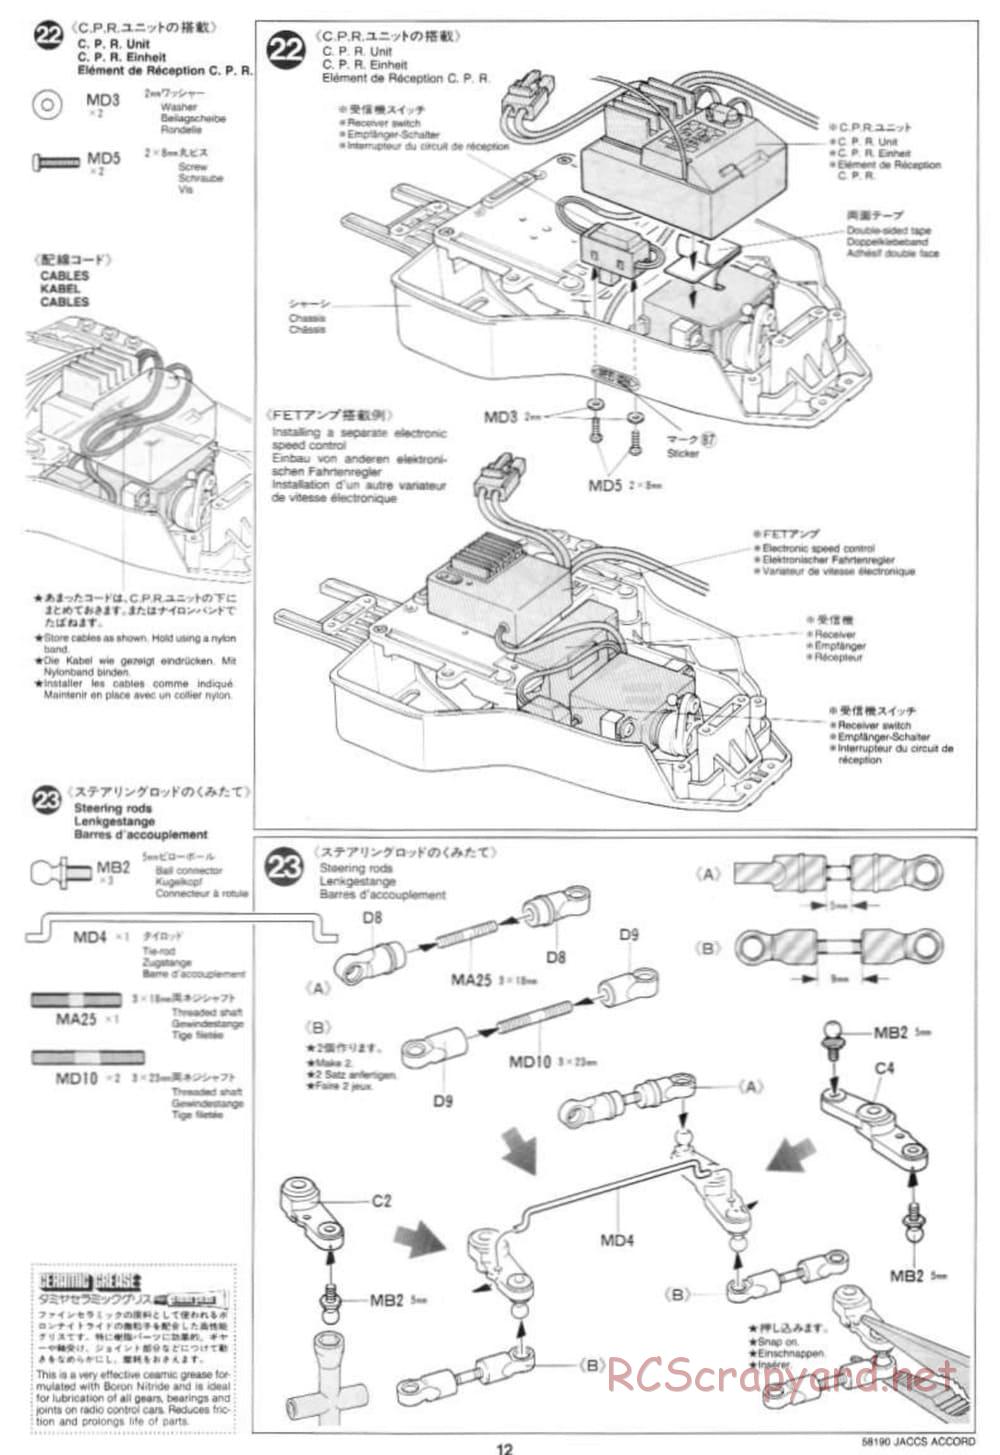 Tamiya - JACCS Honda Accord - FF-01 Chassis - Manual - Page 12